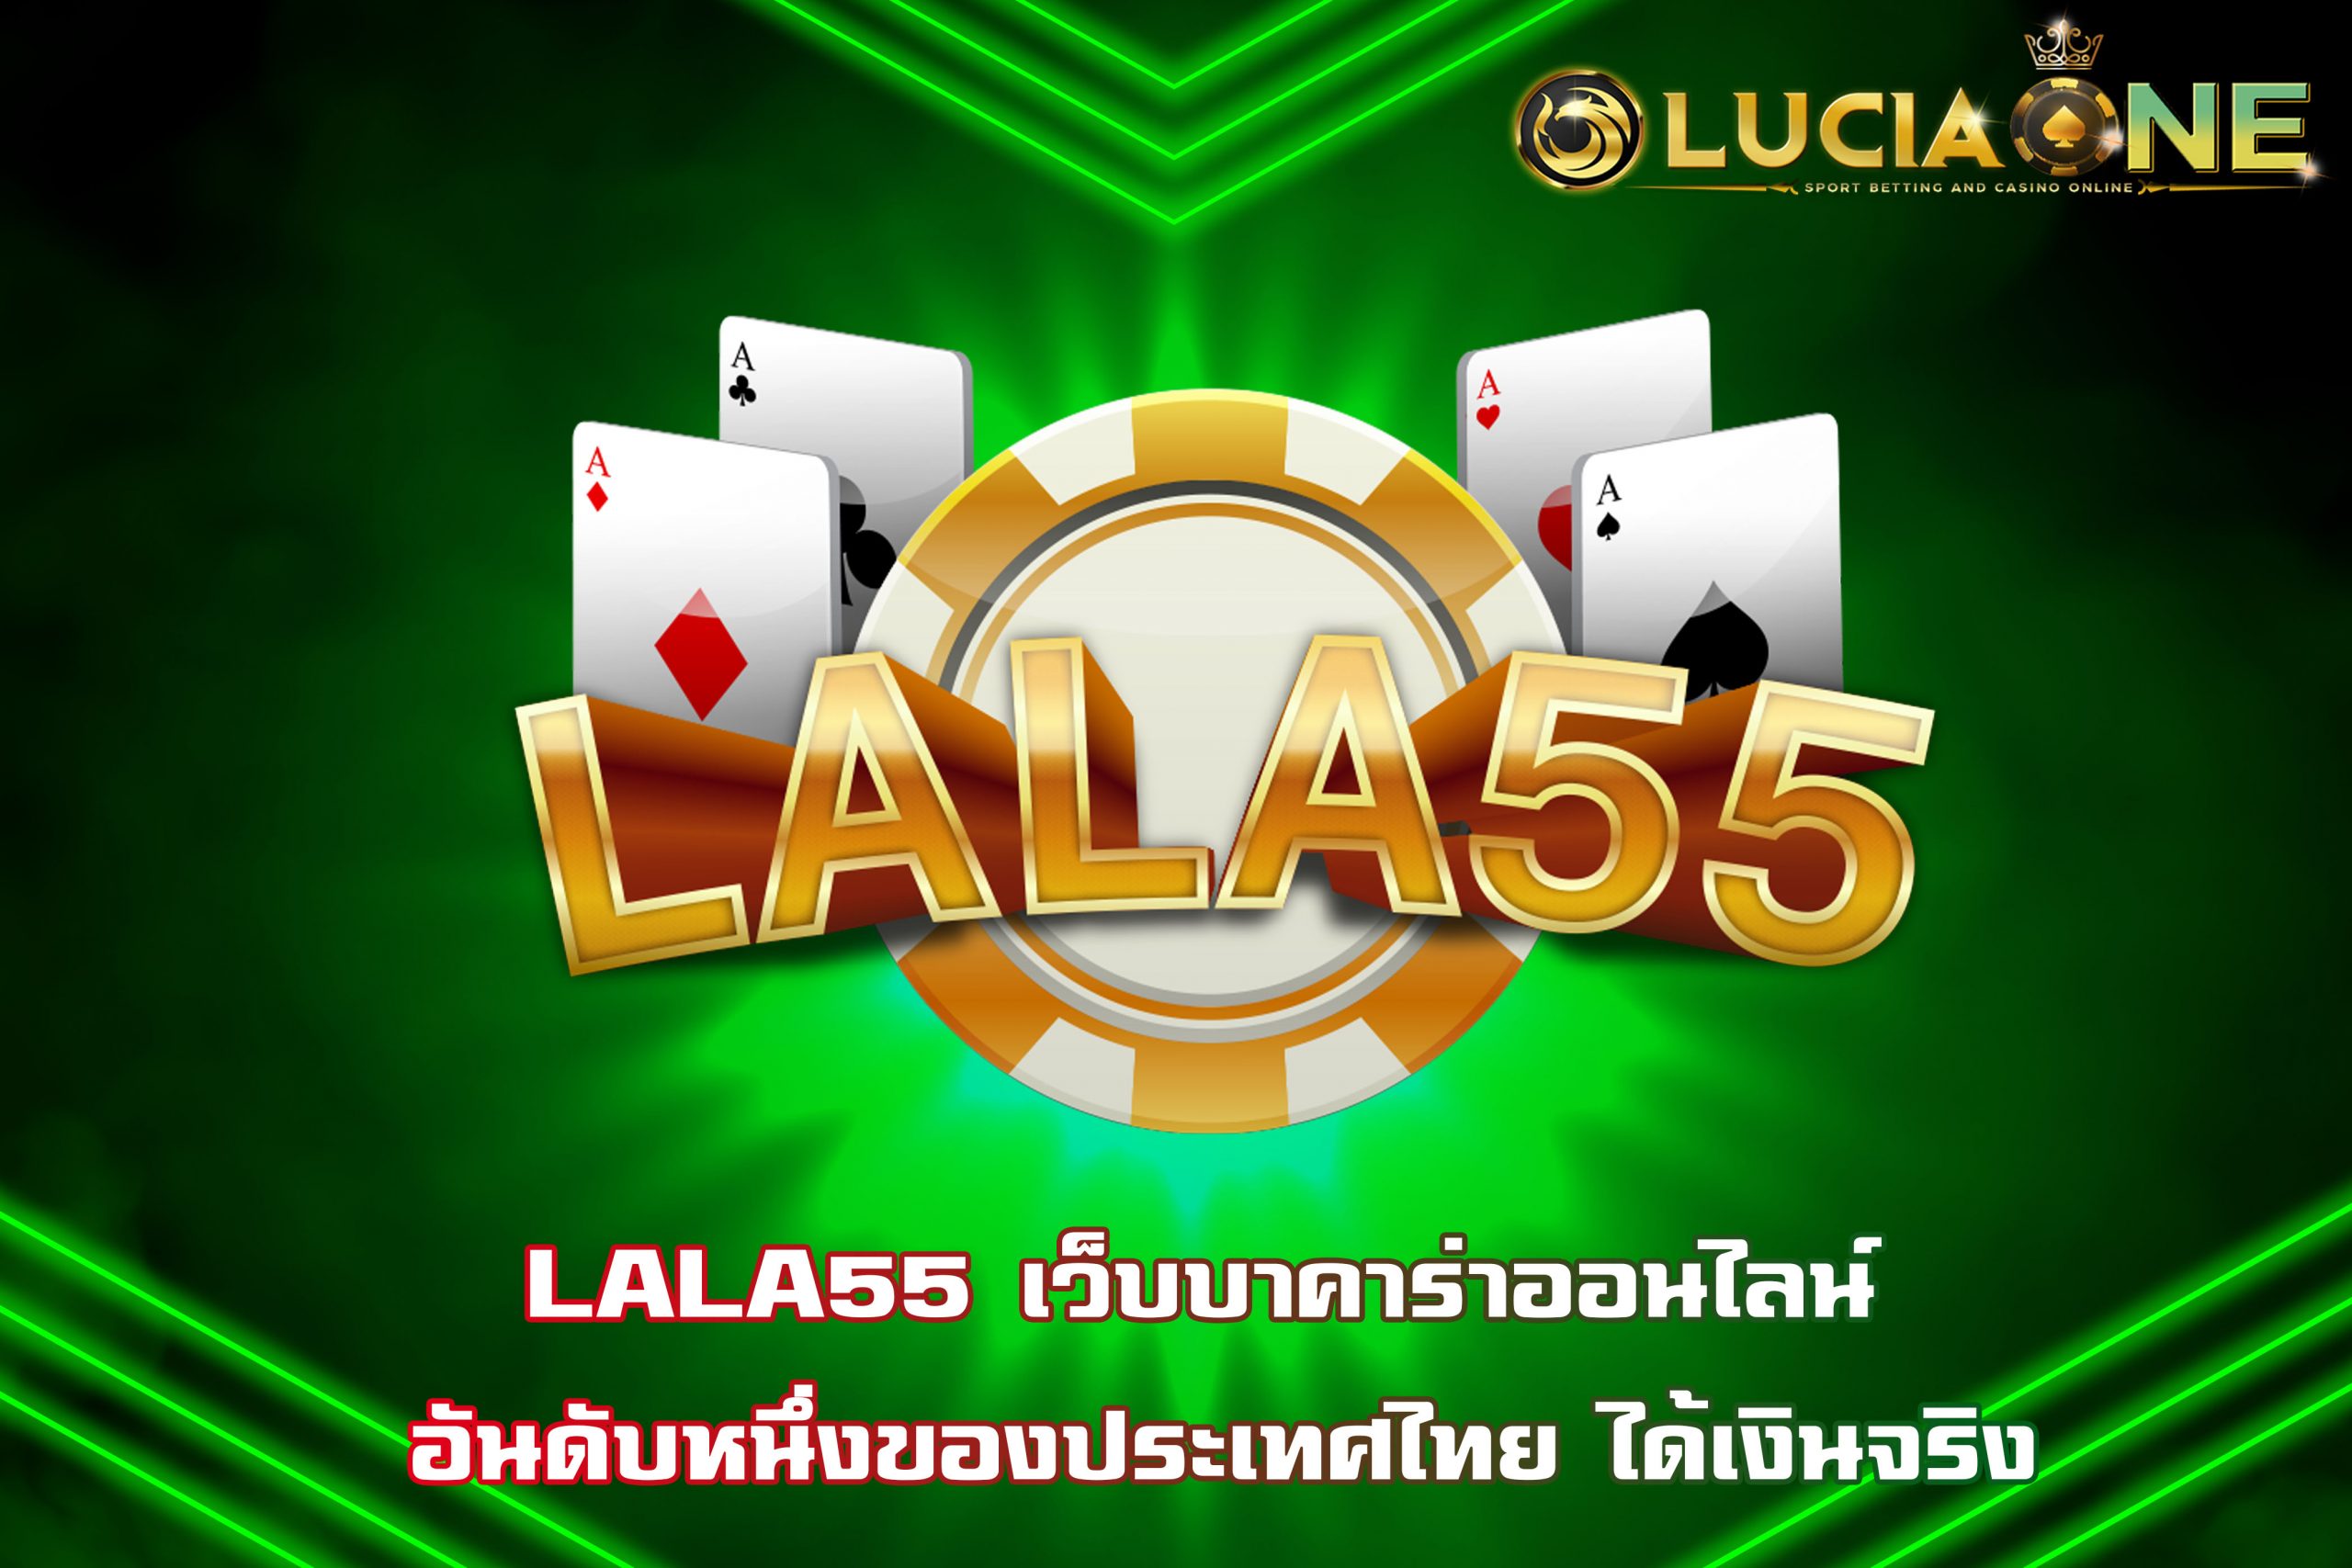 LALA55 เว็บบาคาร่าออนไลน์ อันดับหนึ่งของประเทศไทย ได้เงินจริง